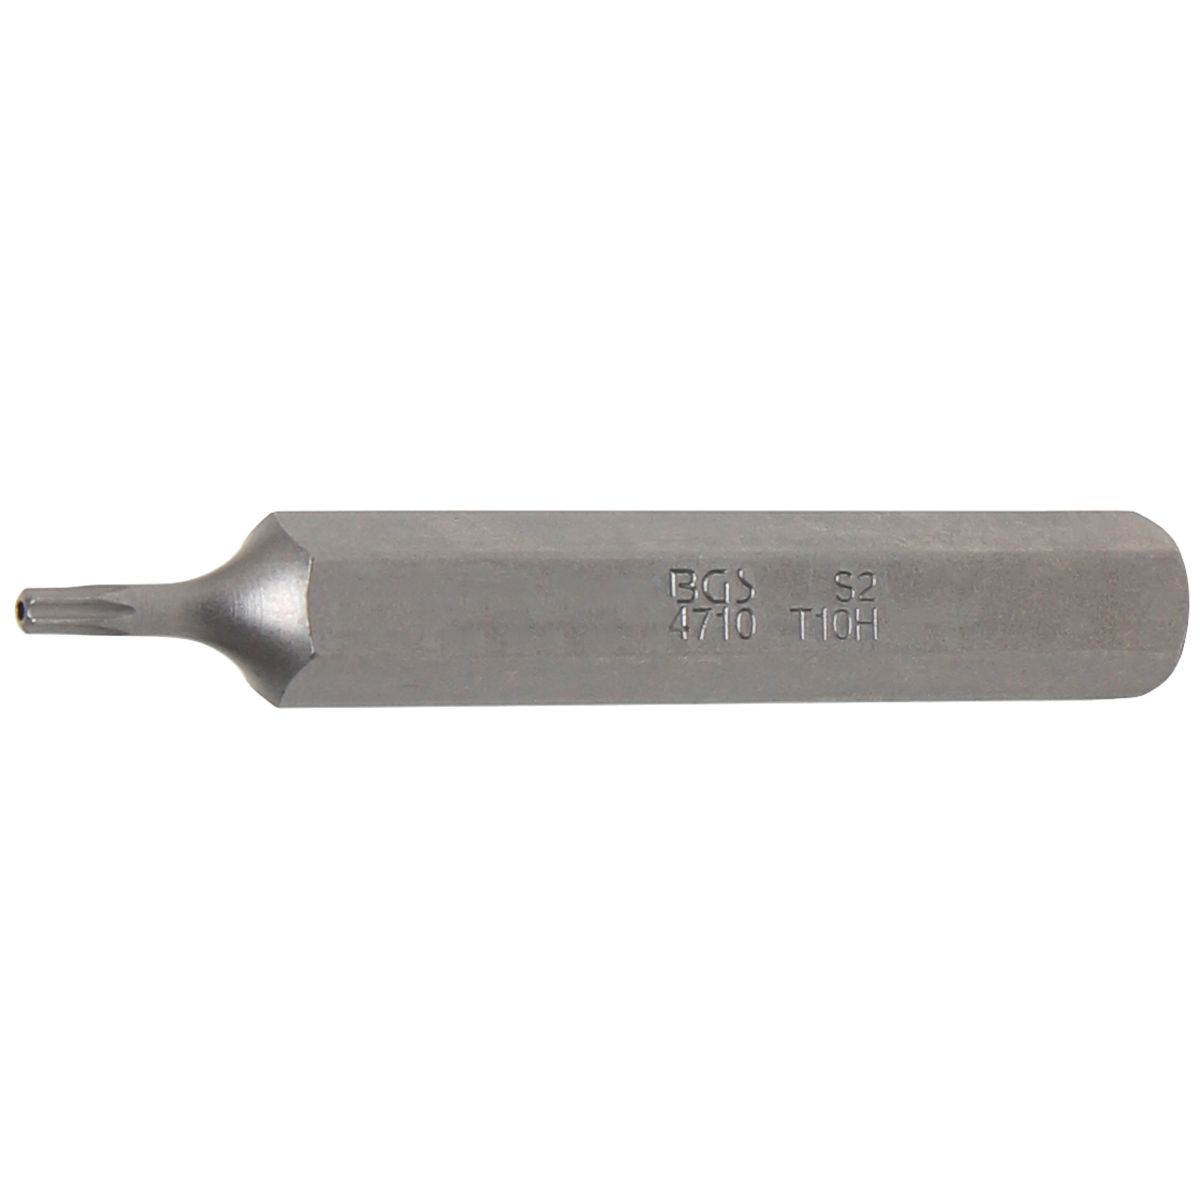 Punta | longitud 75 mm | entrada 10 mm (3/8") | perfil en T (para Torx) con perforación T10